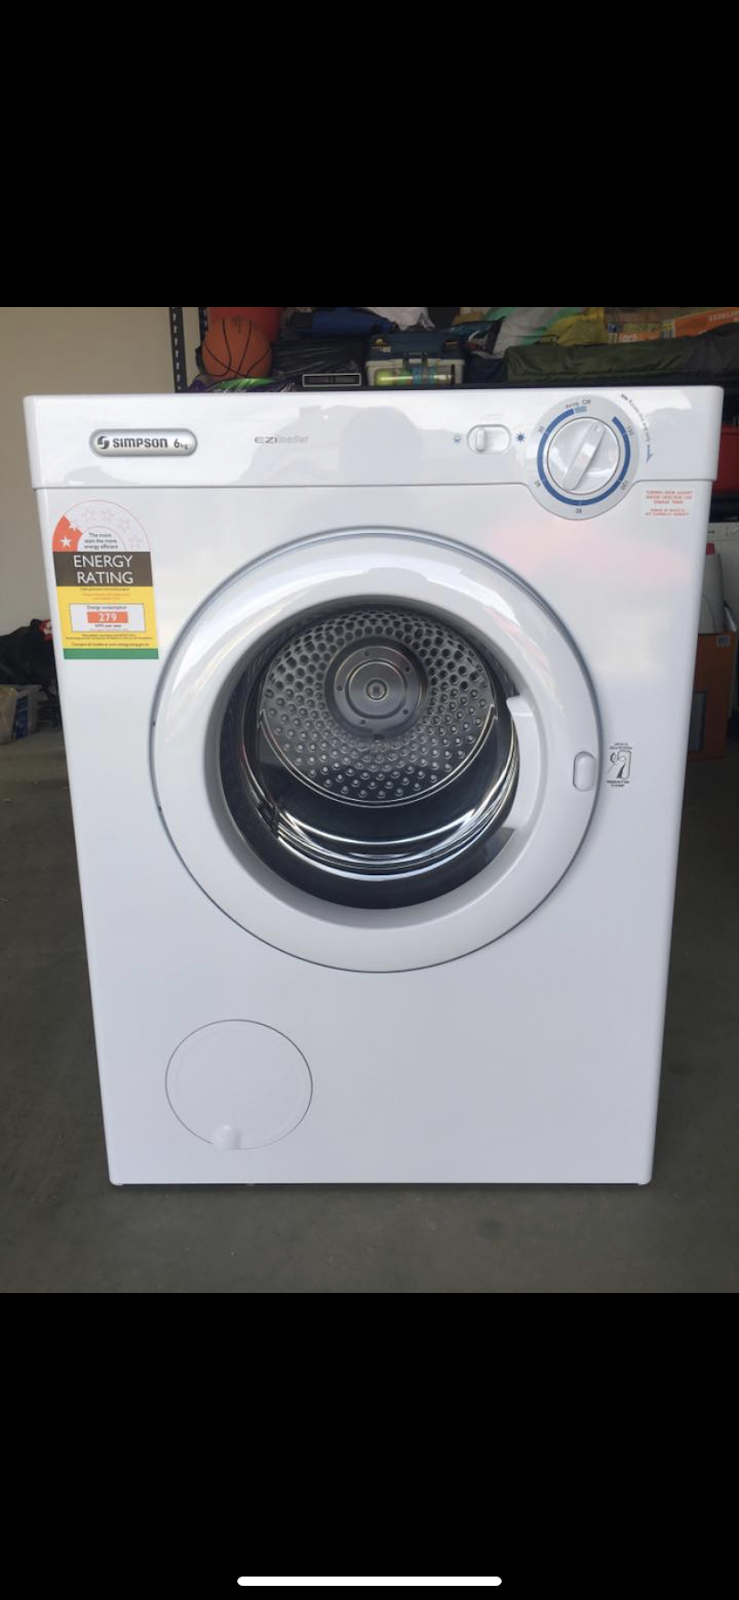 Any Washer and Dryer Repairs | 2 Rowan Walk, Drouin VIC 3818, Australia | Phone: 0421 041 371